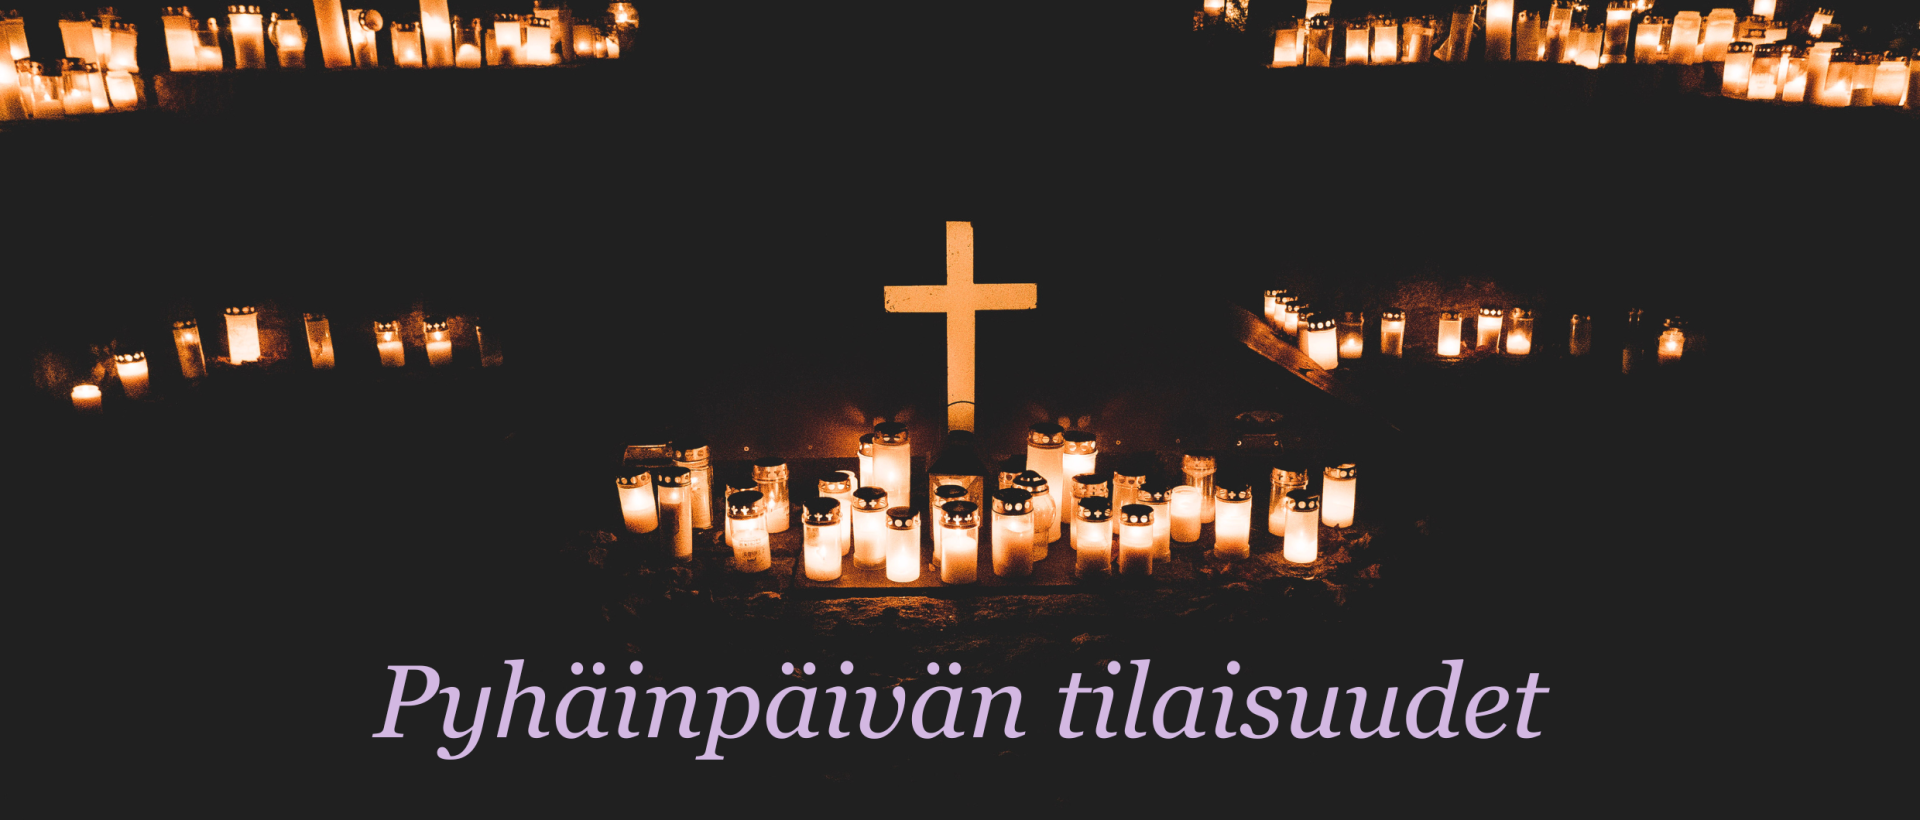 Kynttilämeri pimeässä, keskellä valaistu risti. Teksti Pyhäinpäivän tilaisuudet. Kuva Samuli Perkiö